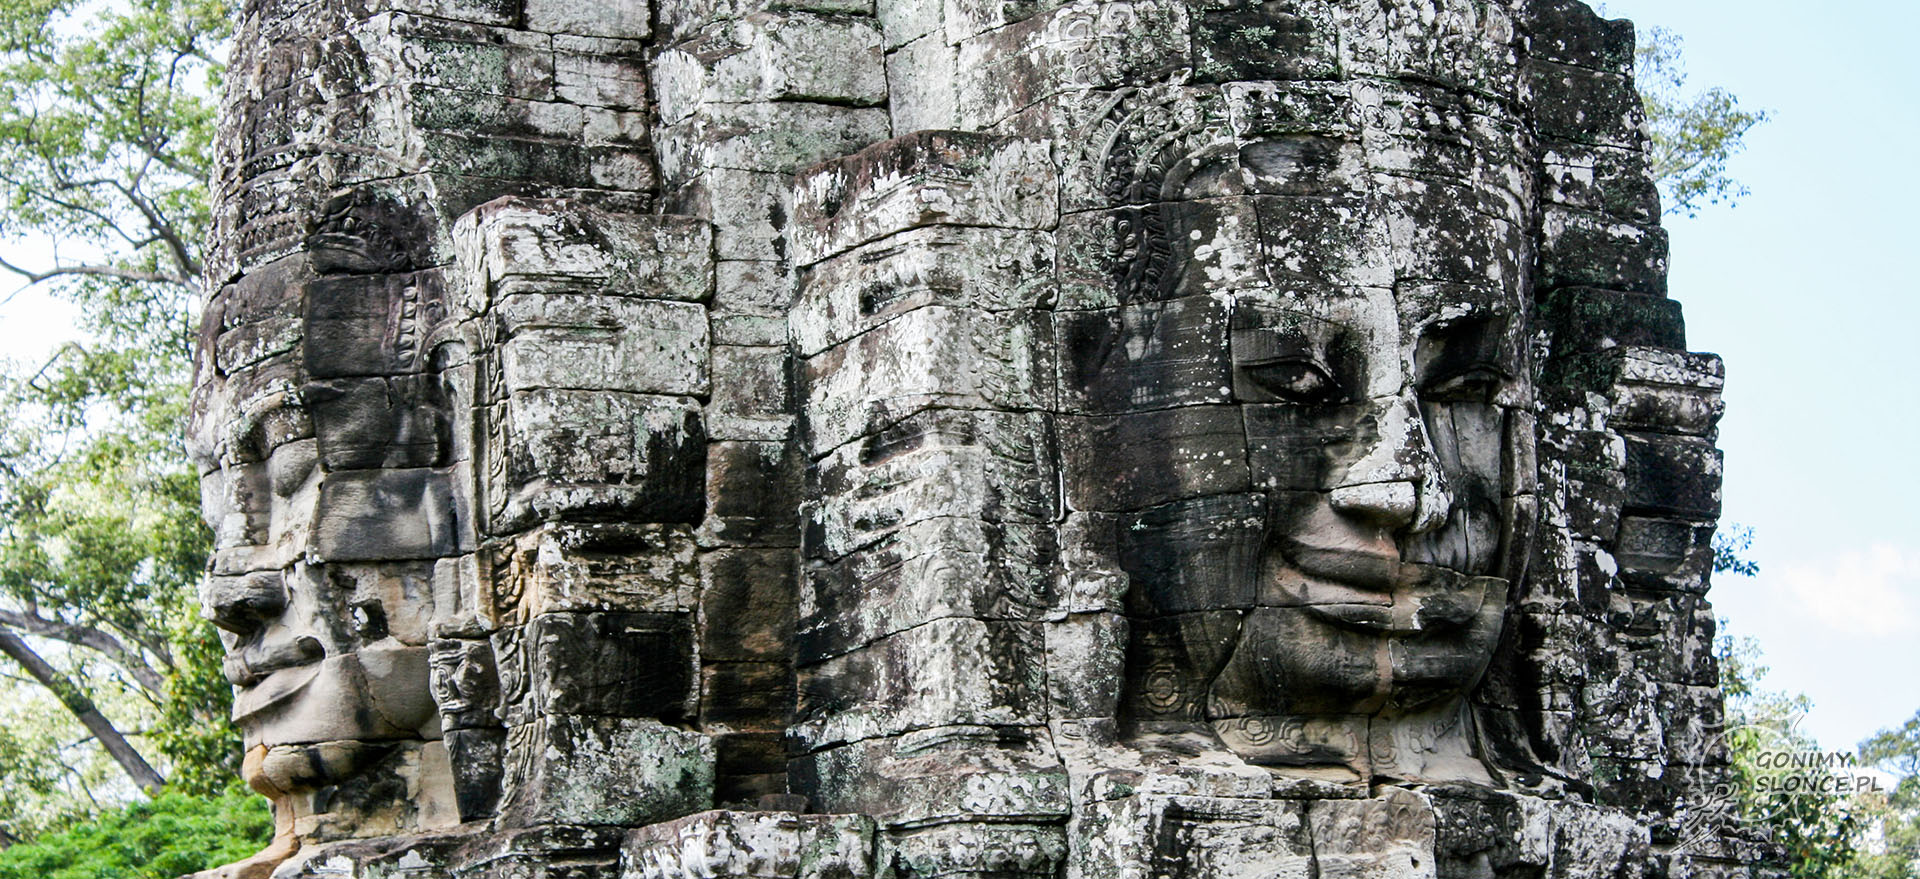 Świątynia Bayon, Kambodża